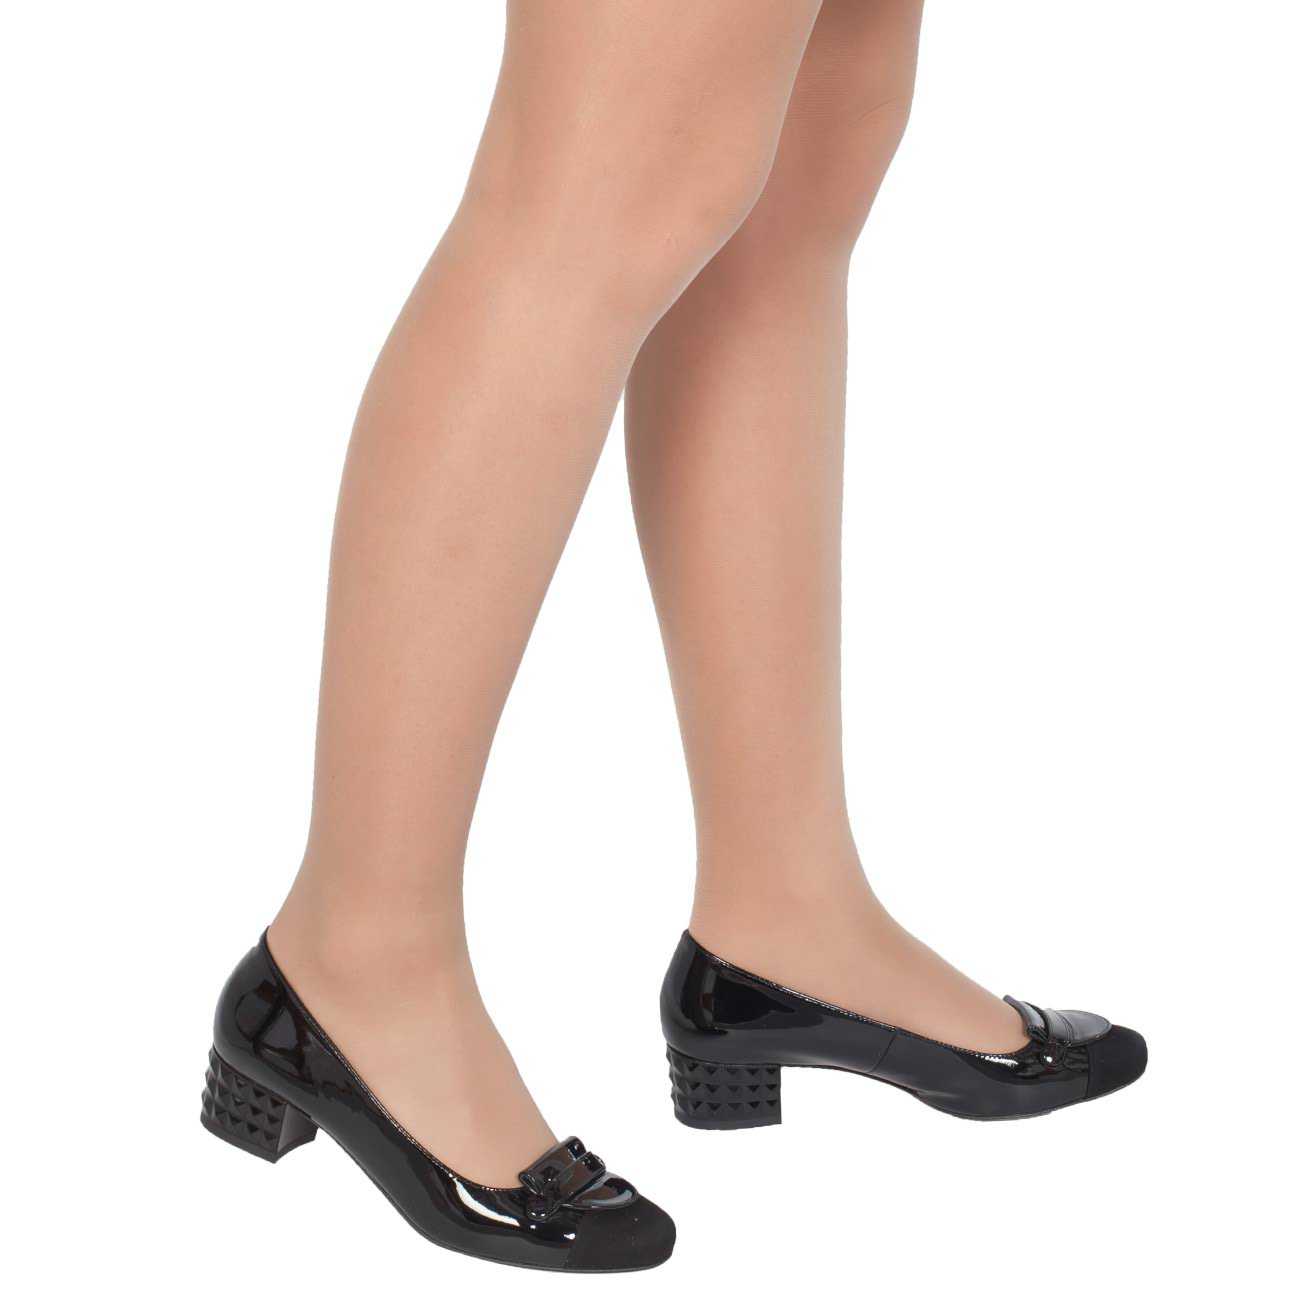 Вайлдберриз туфли женские кожаные на каблуках. Хегель обувь 2021. Туфли женские хегель 101040. Женская обувь хегель 2022. Туфли женские на низком каблуке черные на валберис.